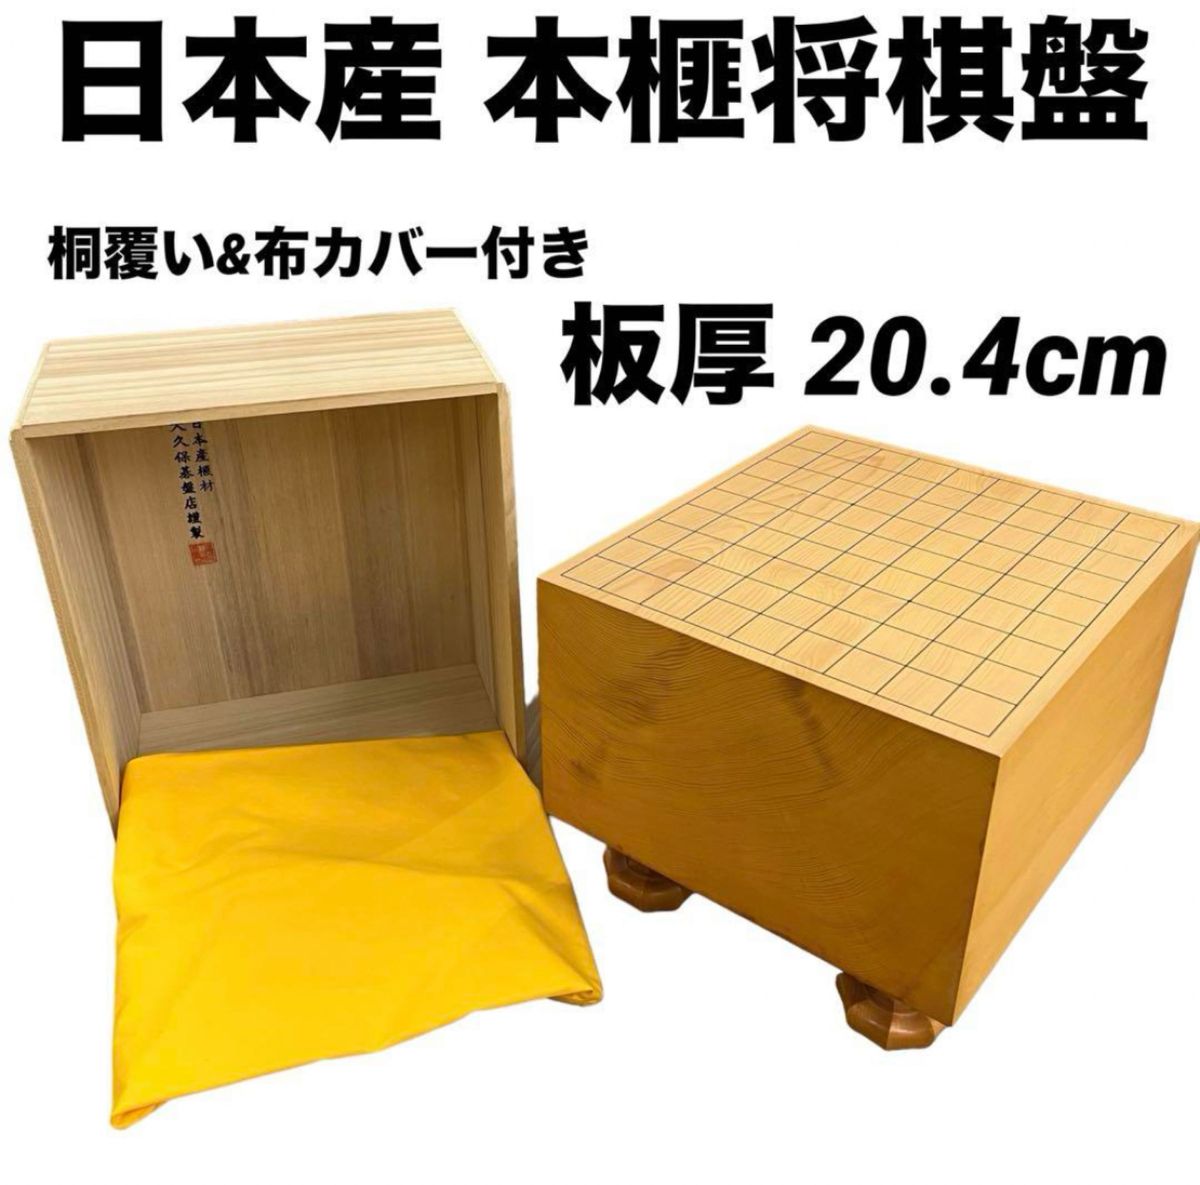 日本産本榧碁盤5.8寸 - 囲碁/将棋